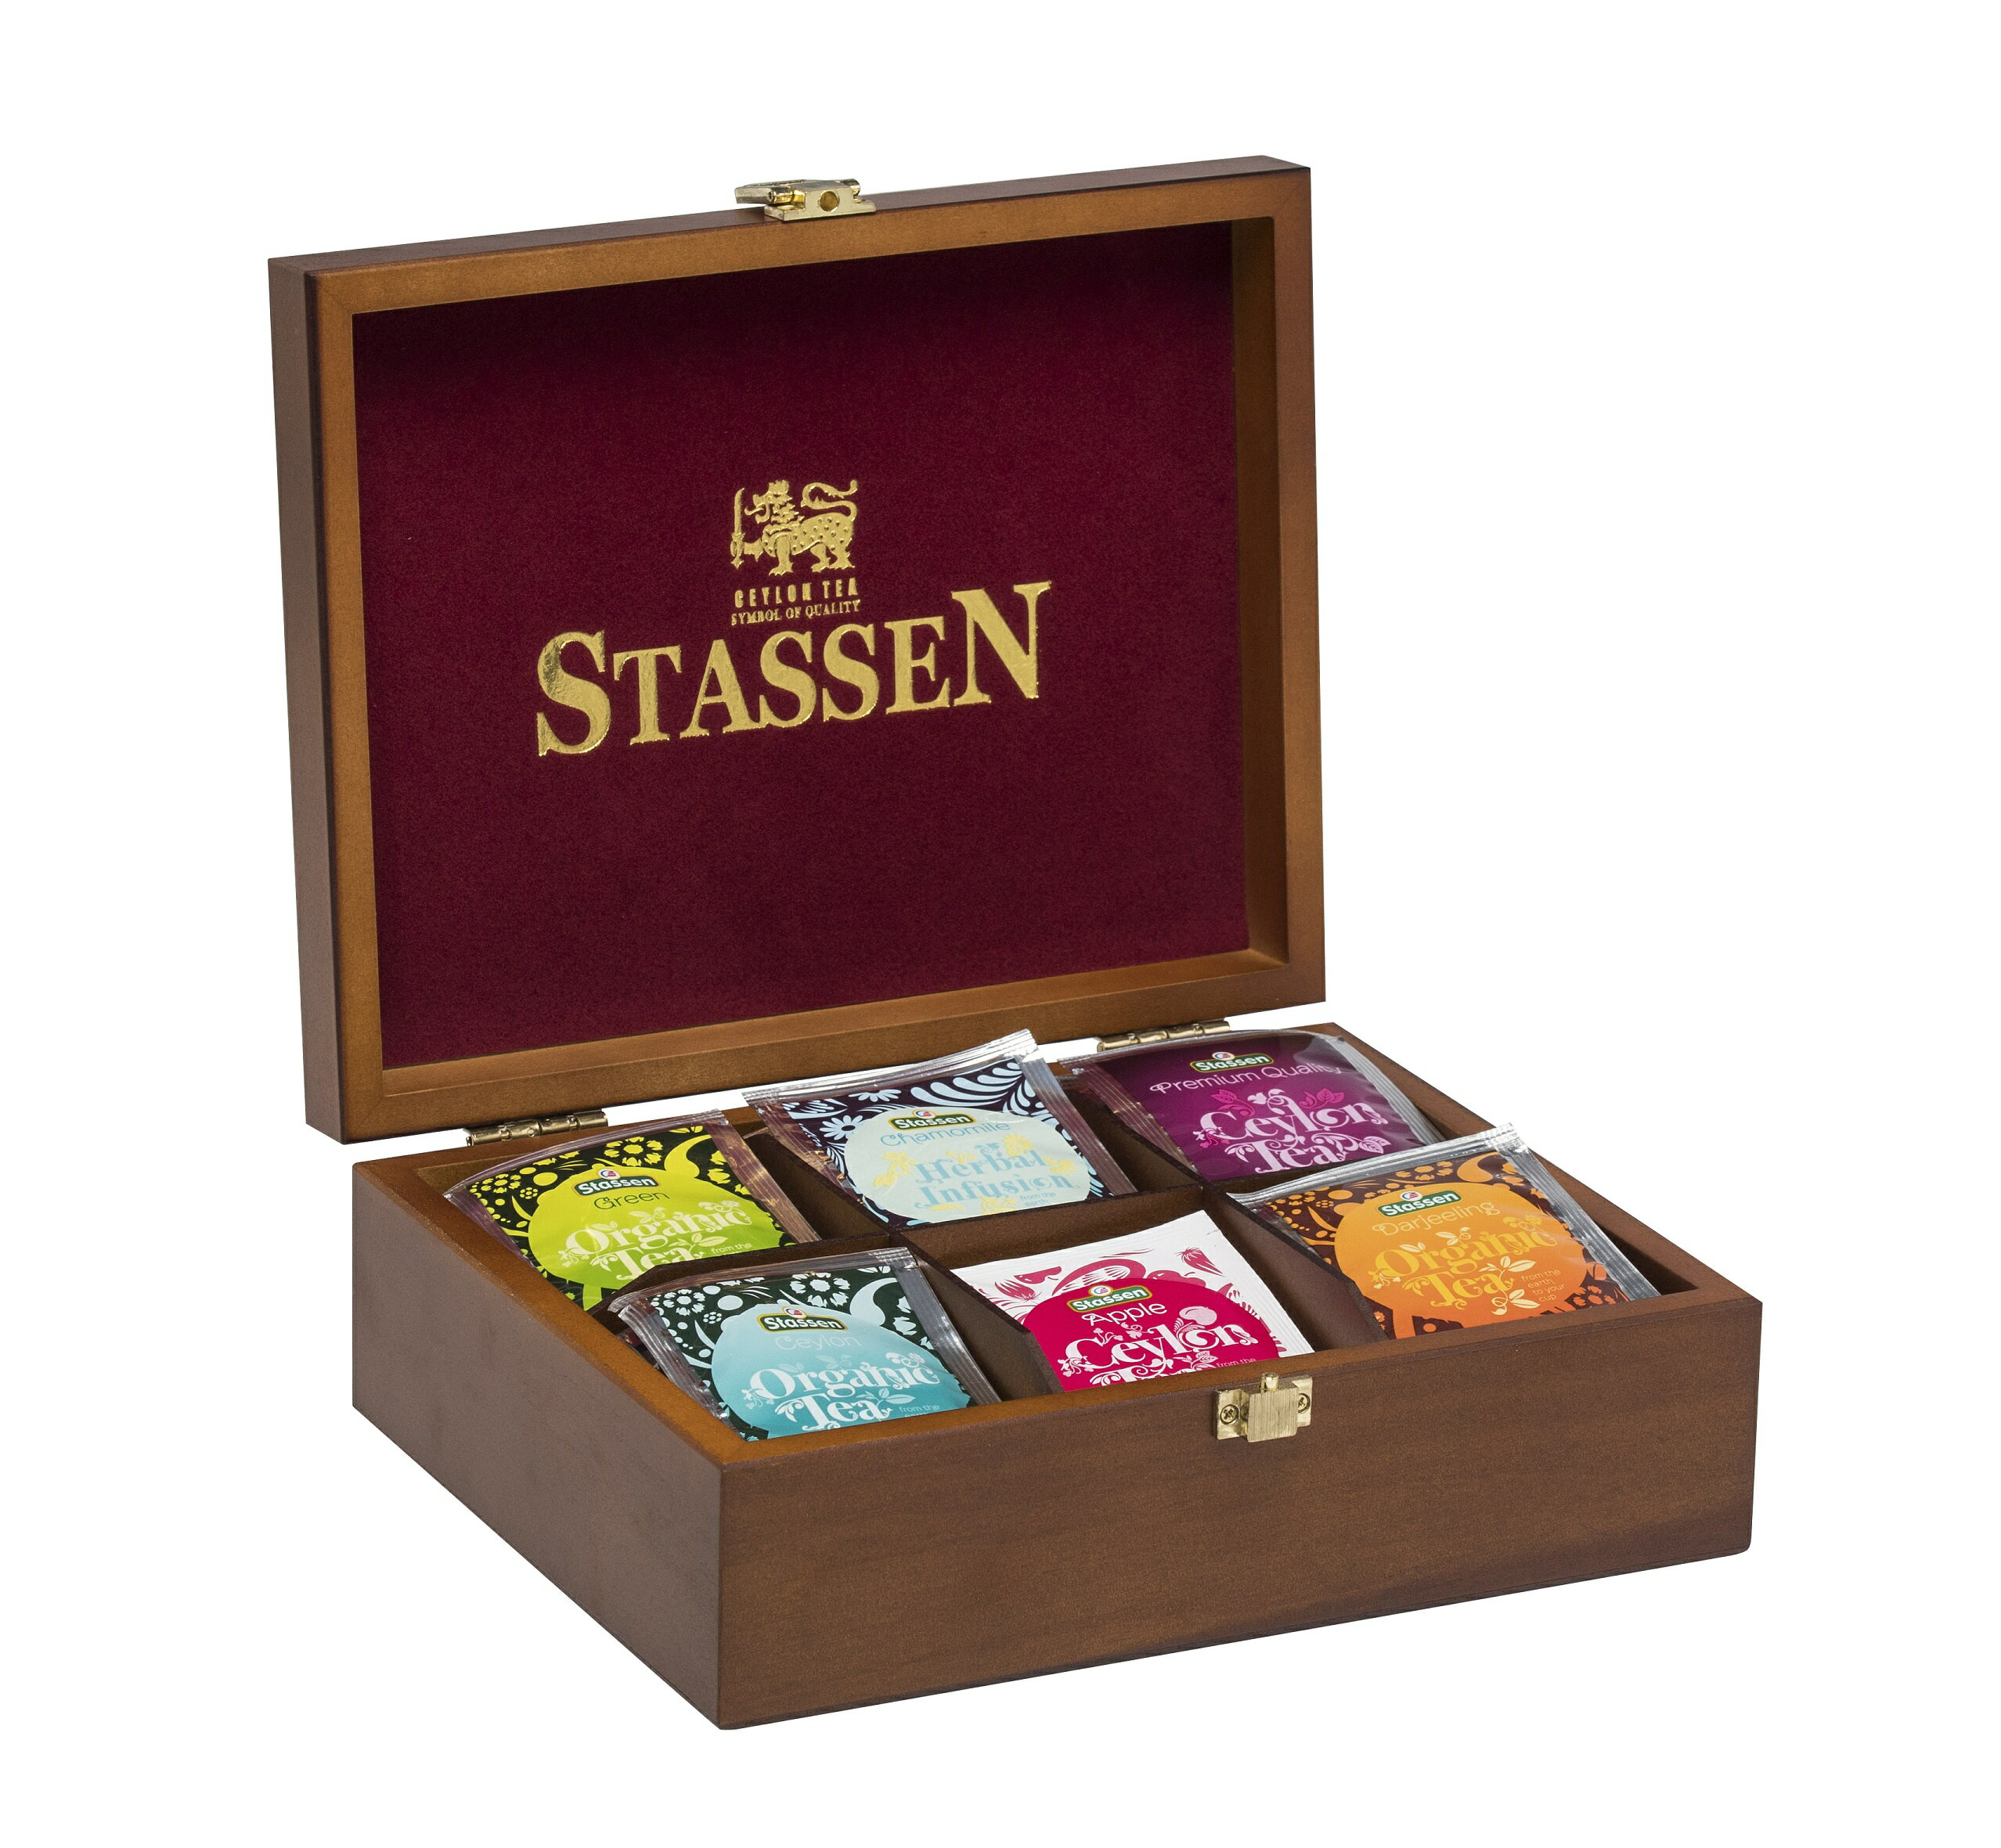 Stassen 司迪生【 綜合茶包木質禮盒 】▂▃▅♛ 附贈提袋 ♛▅▃▂